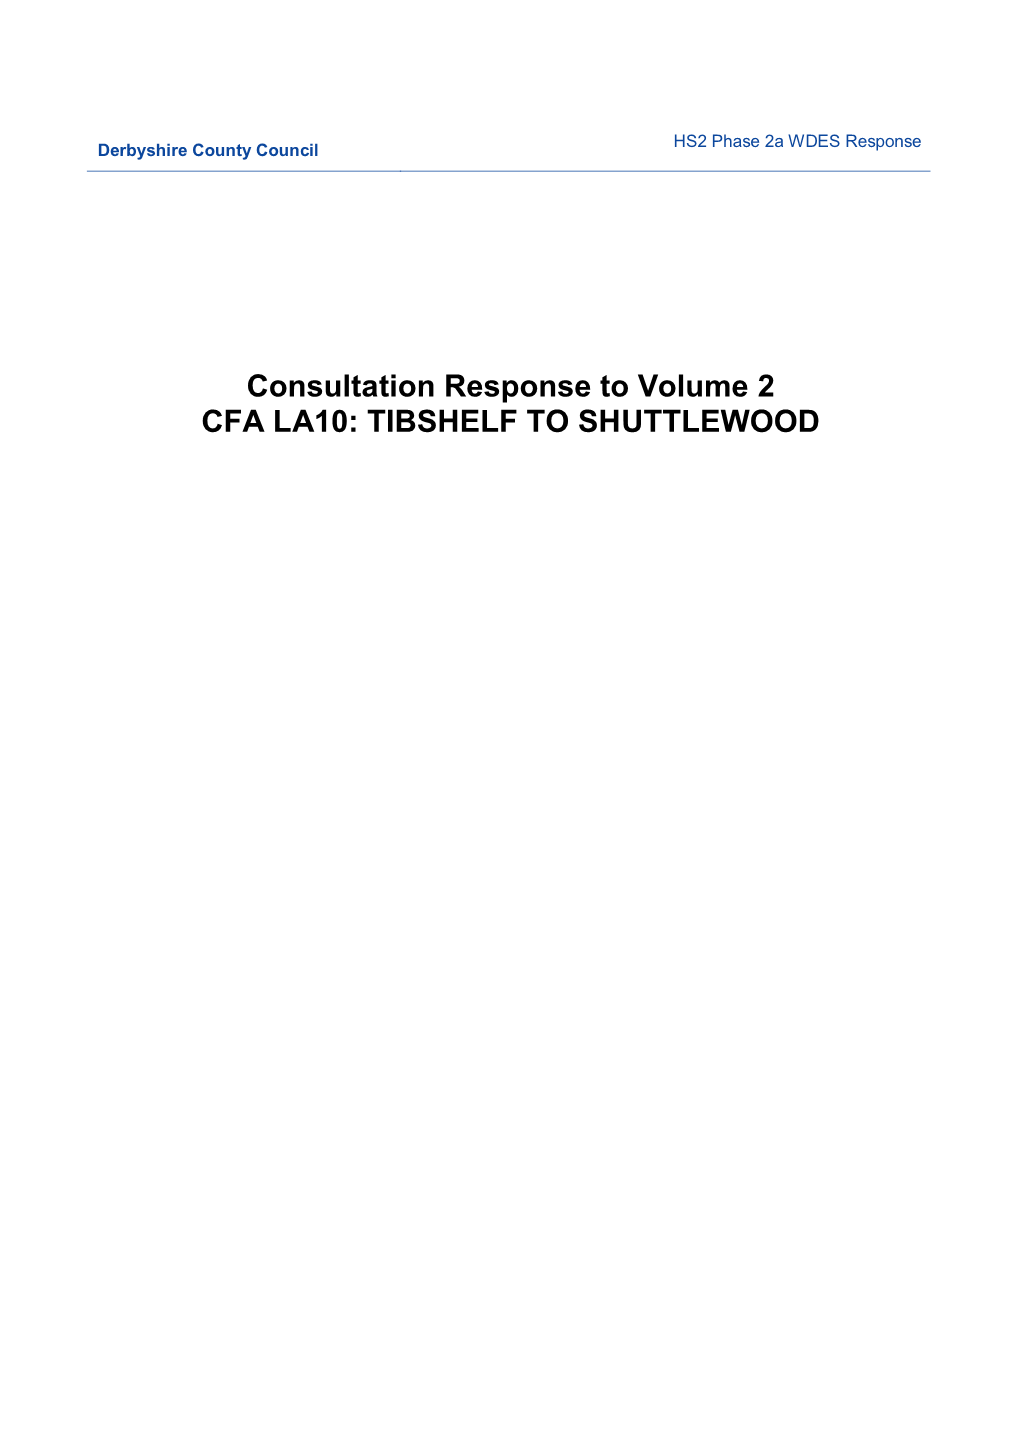 HS2 Consultation Response LA10 Tibshelf to Shuttlewood